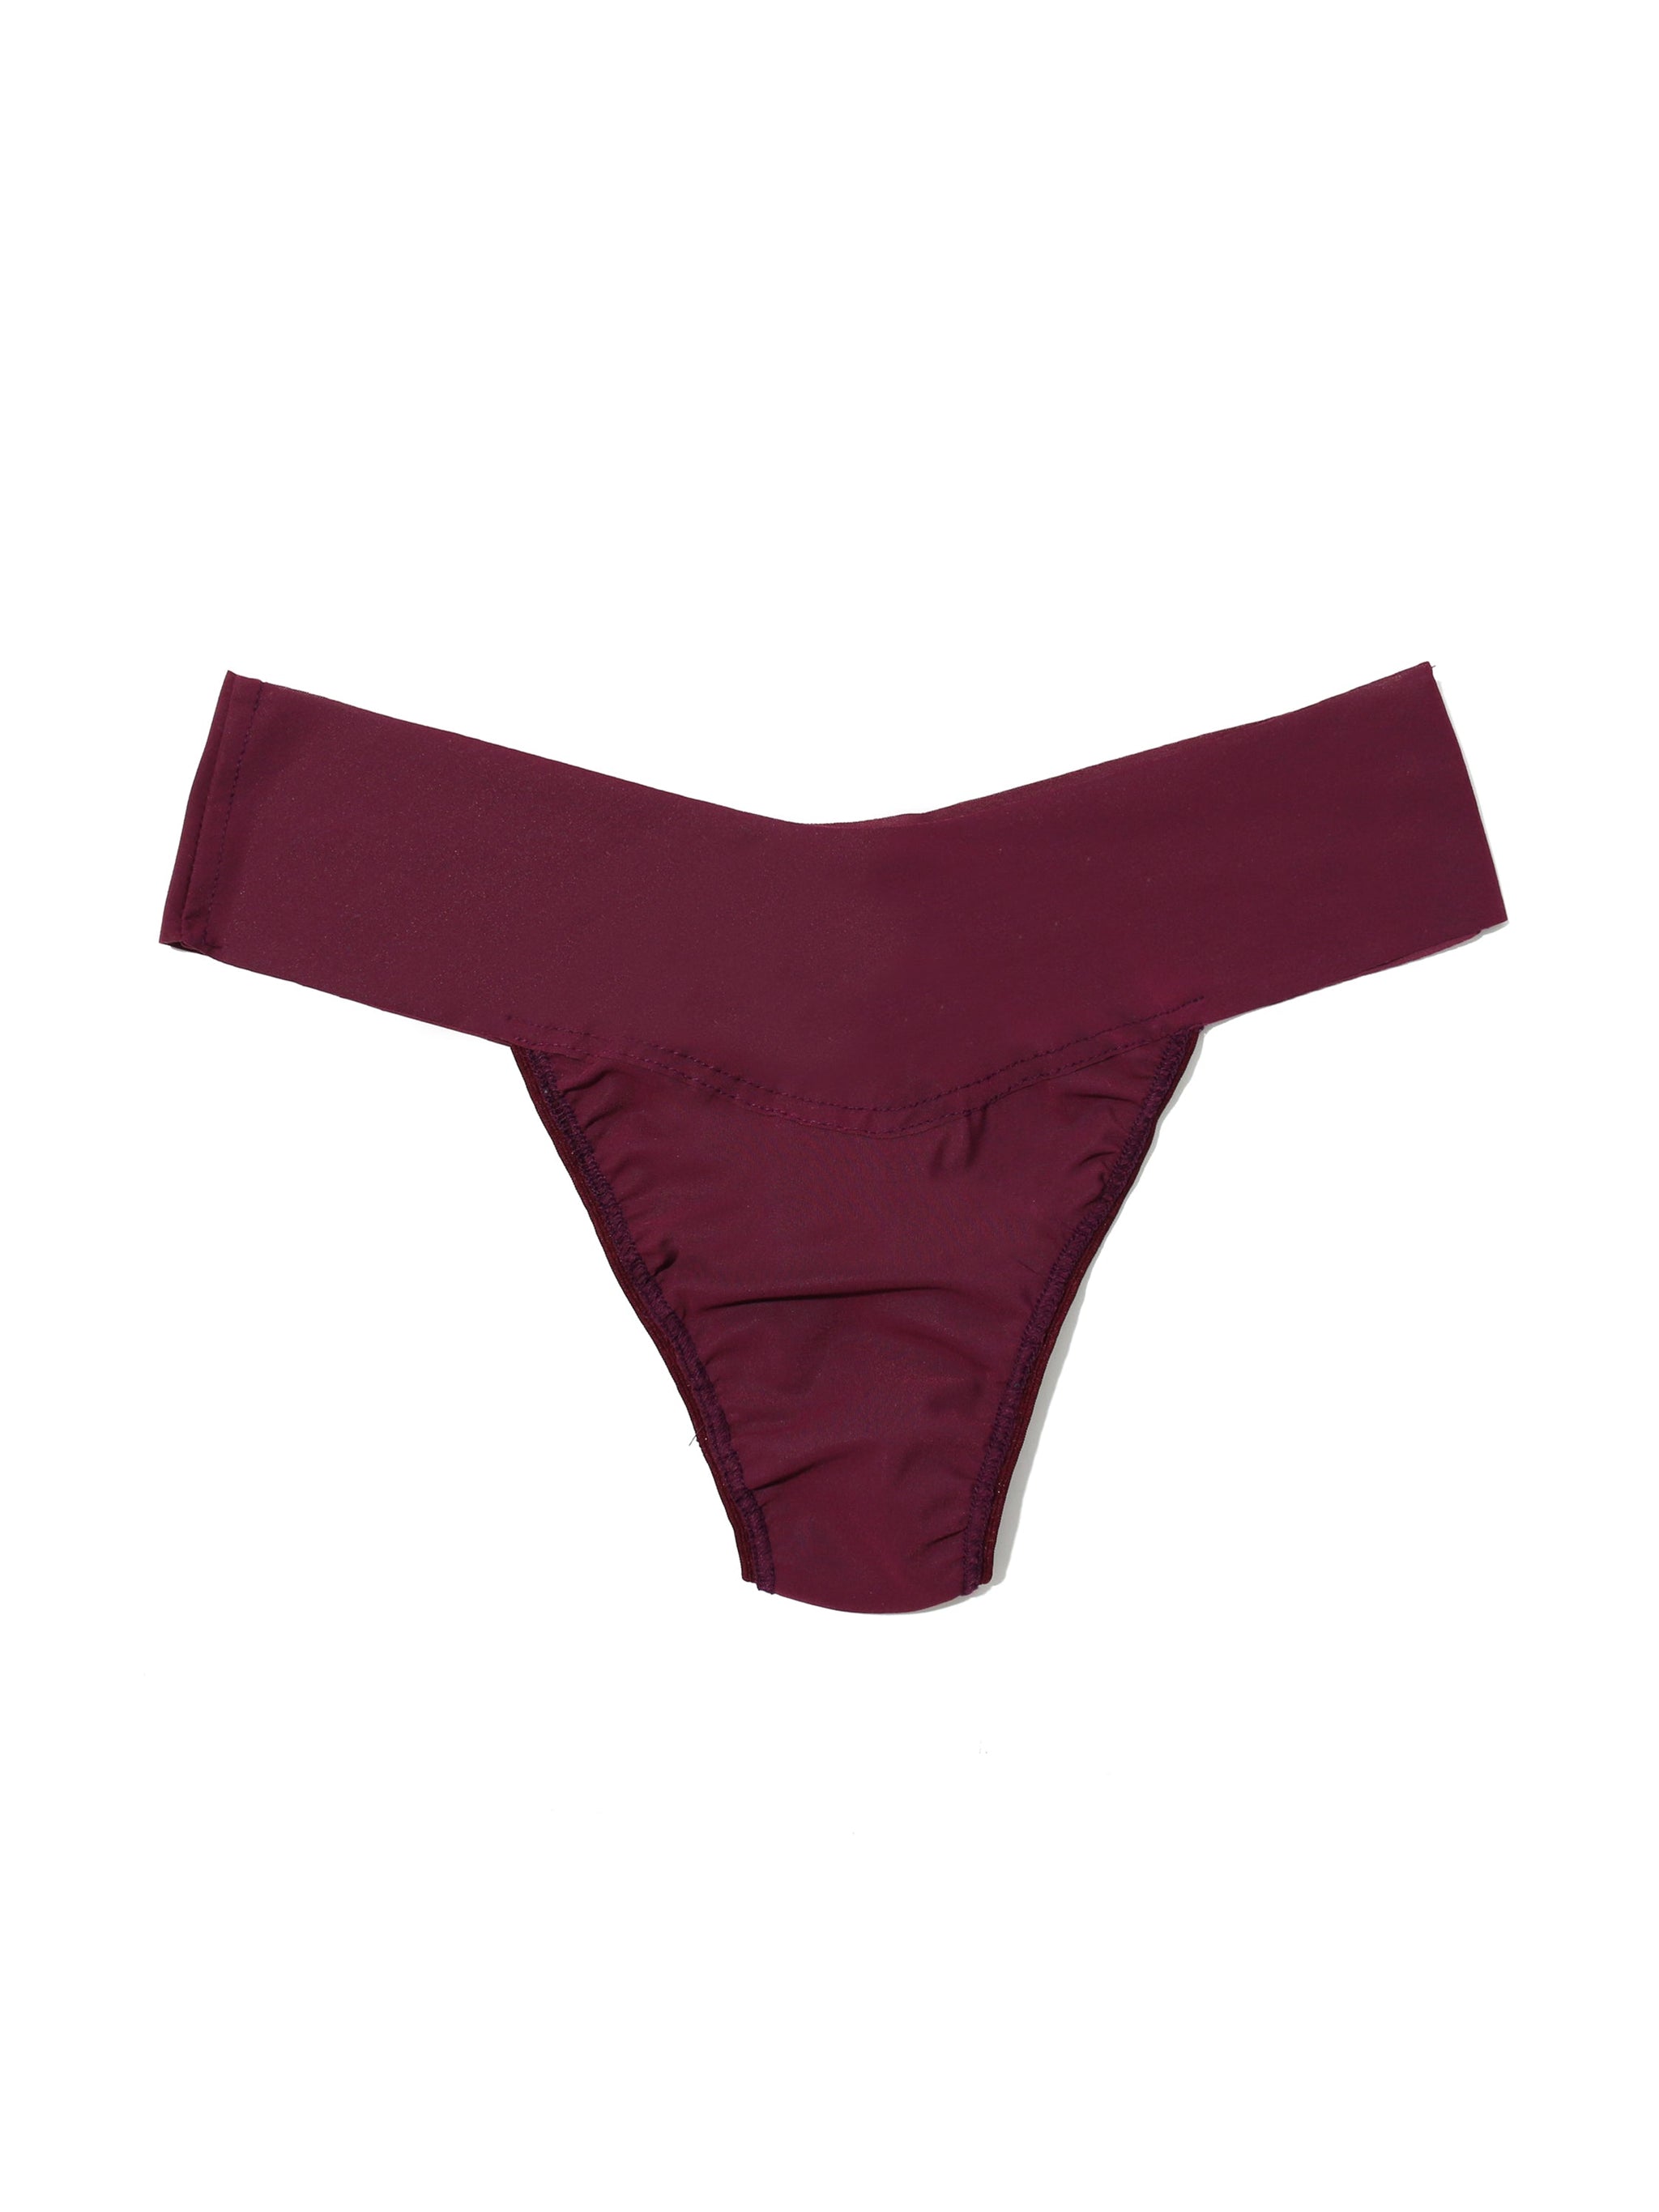 Conscious Seamless Thong Panty - Panties - Victoria's Secret